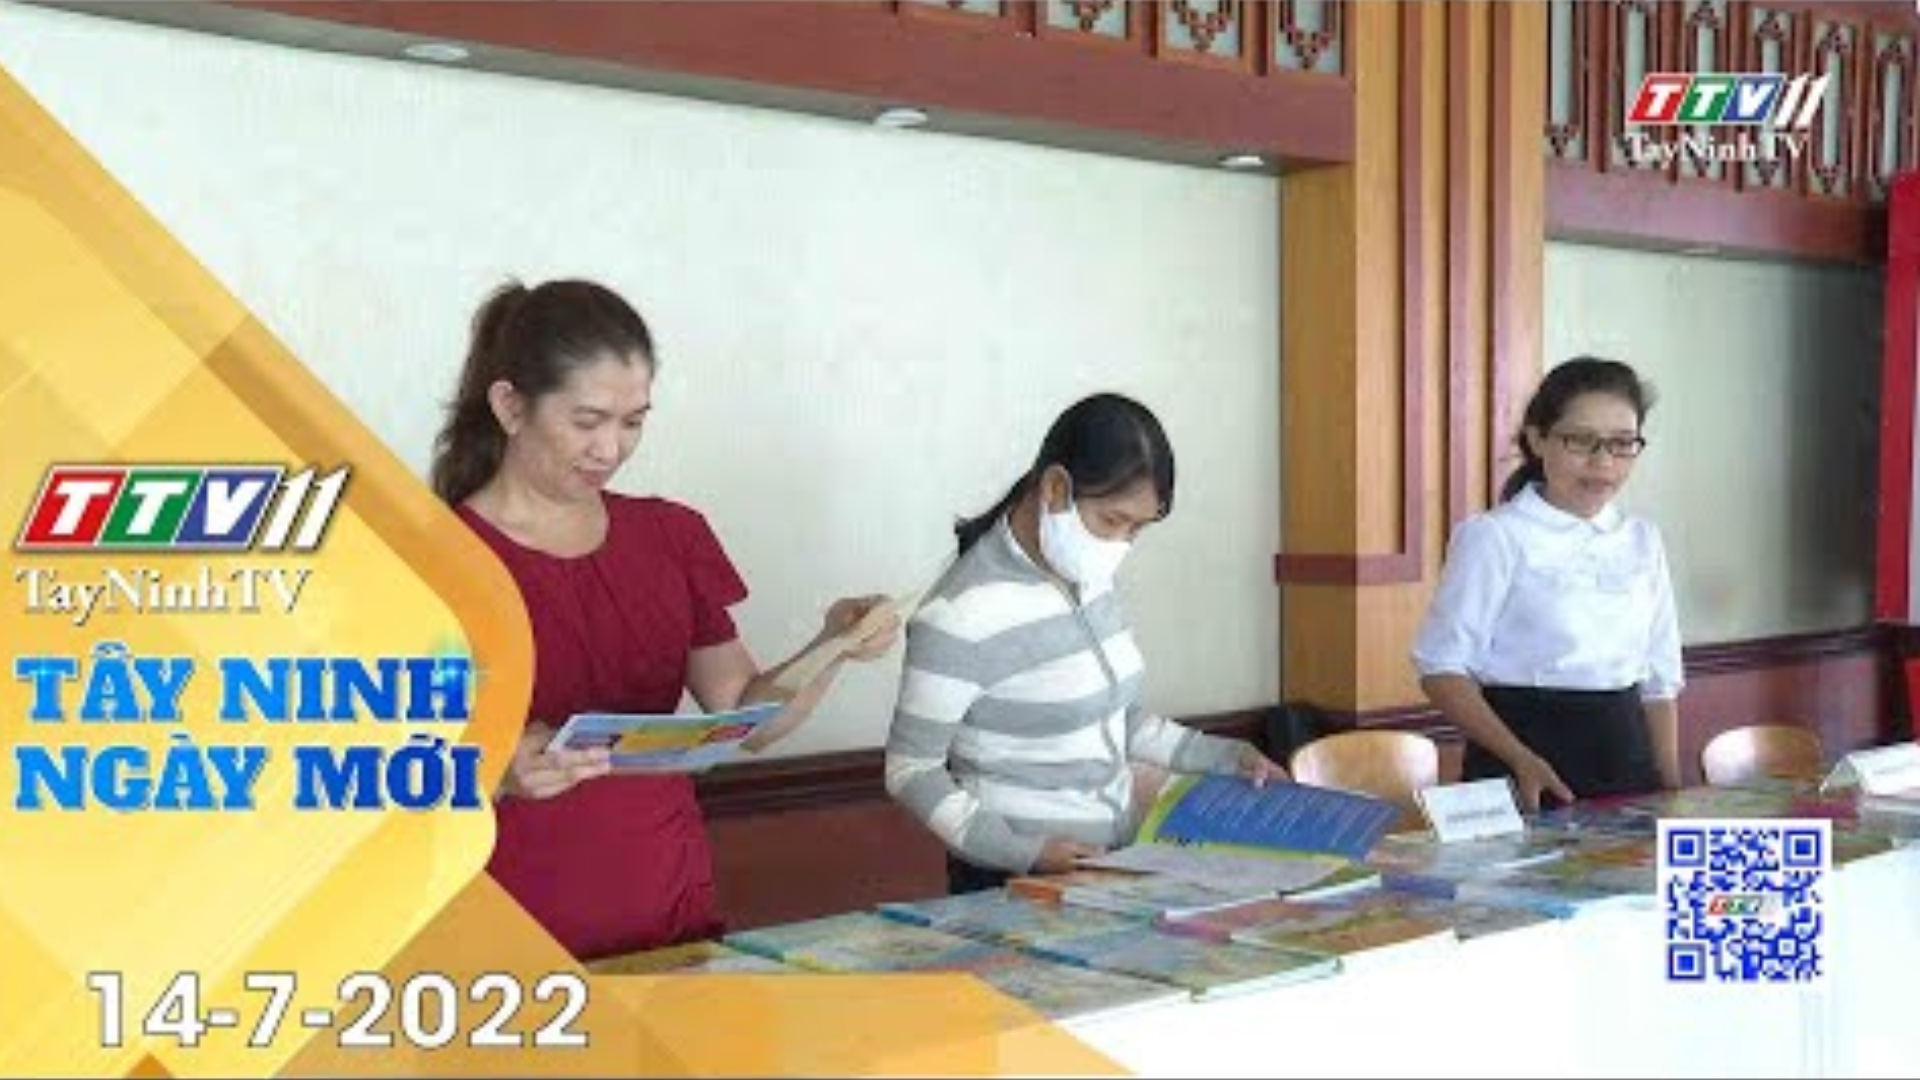 Tây Ninh ngày mới 14-7-2022 | Tin tức hôm nay | TayNinhTV